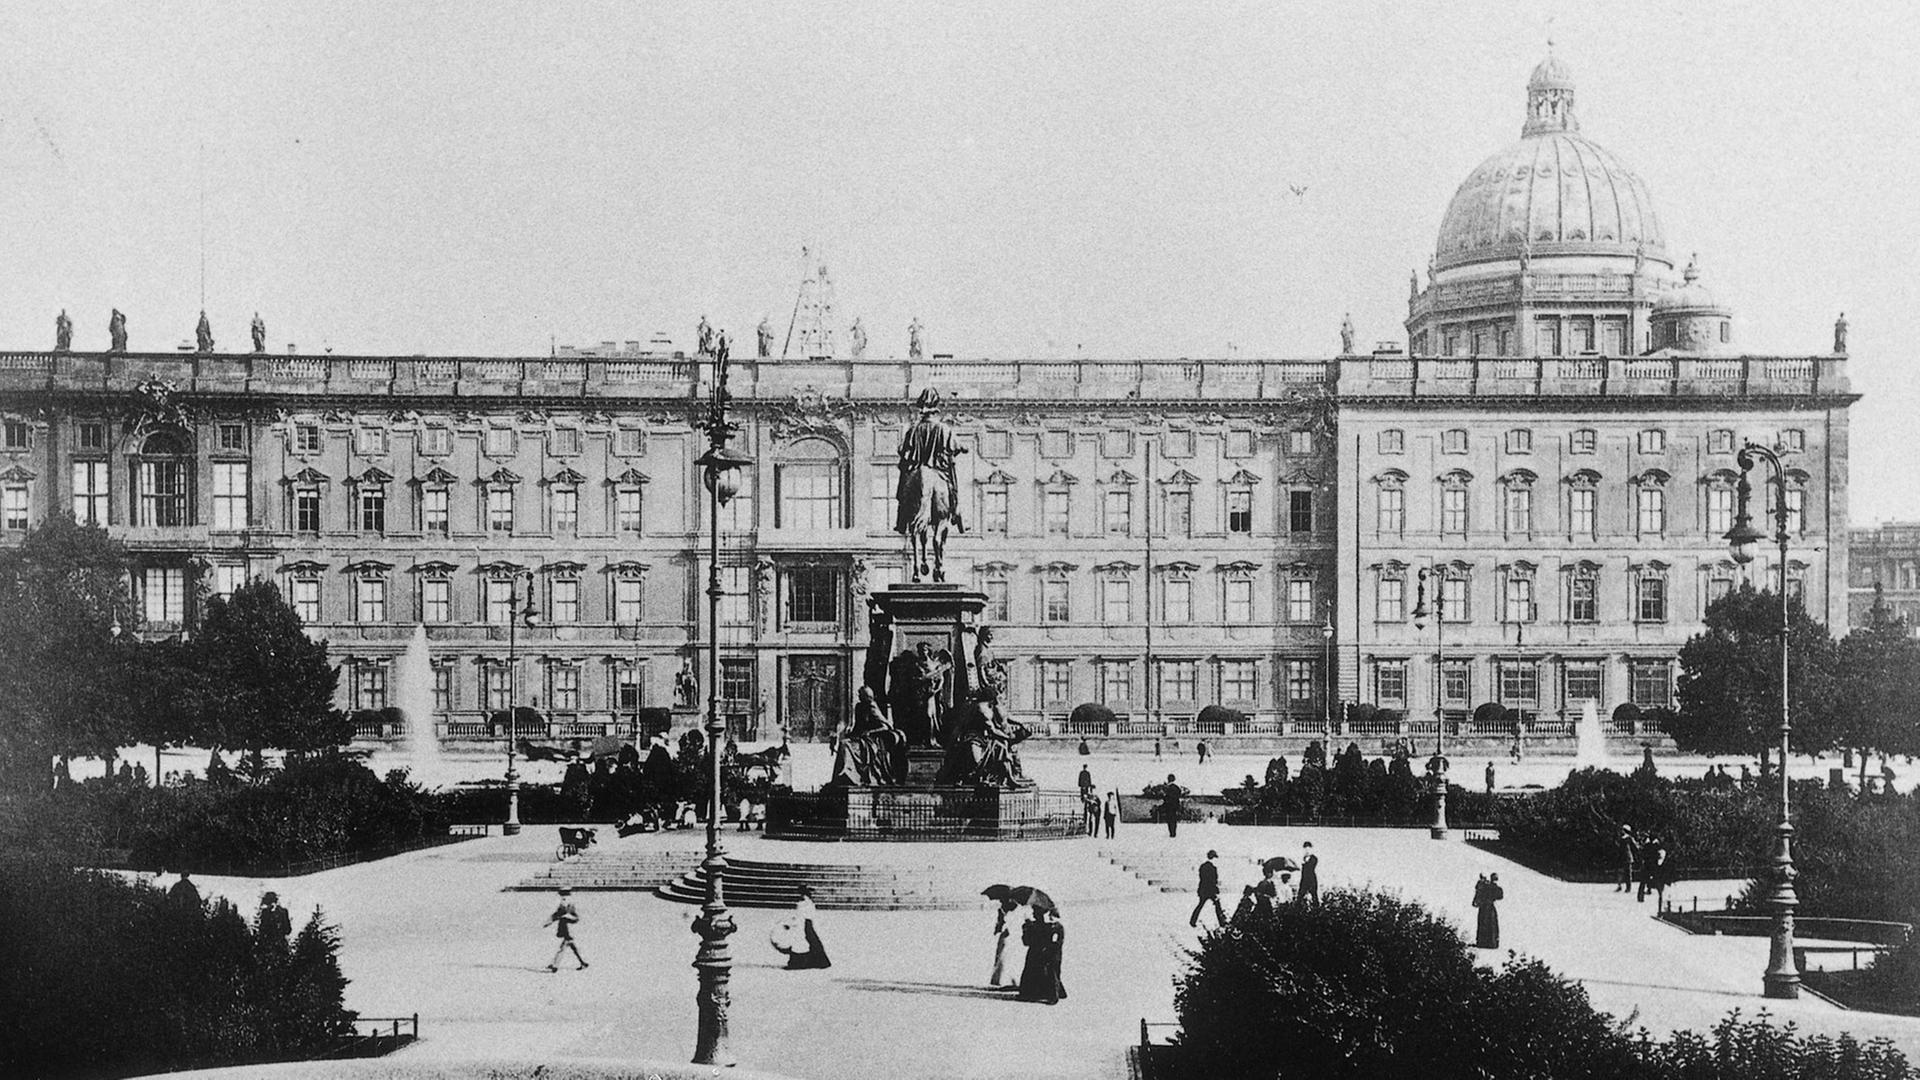 Das Berliner Stadtschloss um 1900